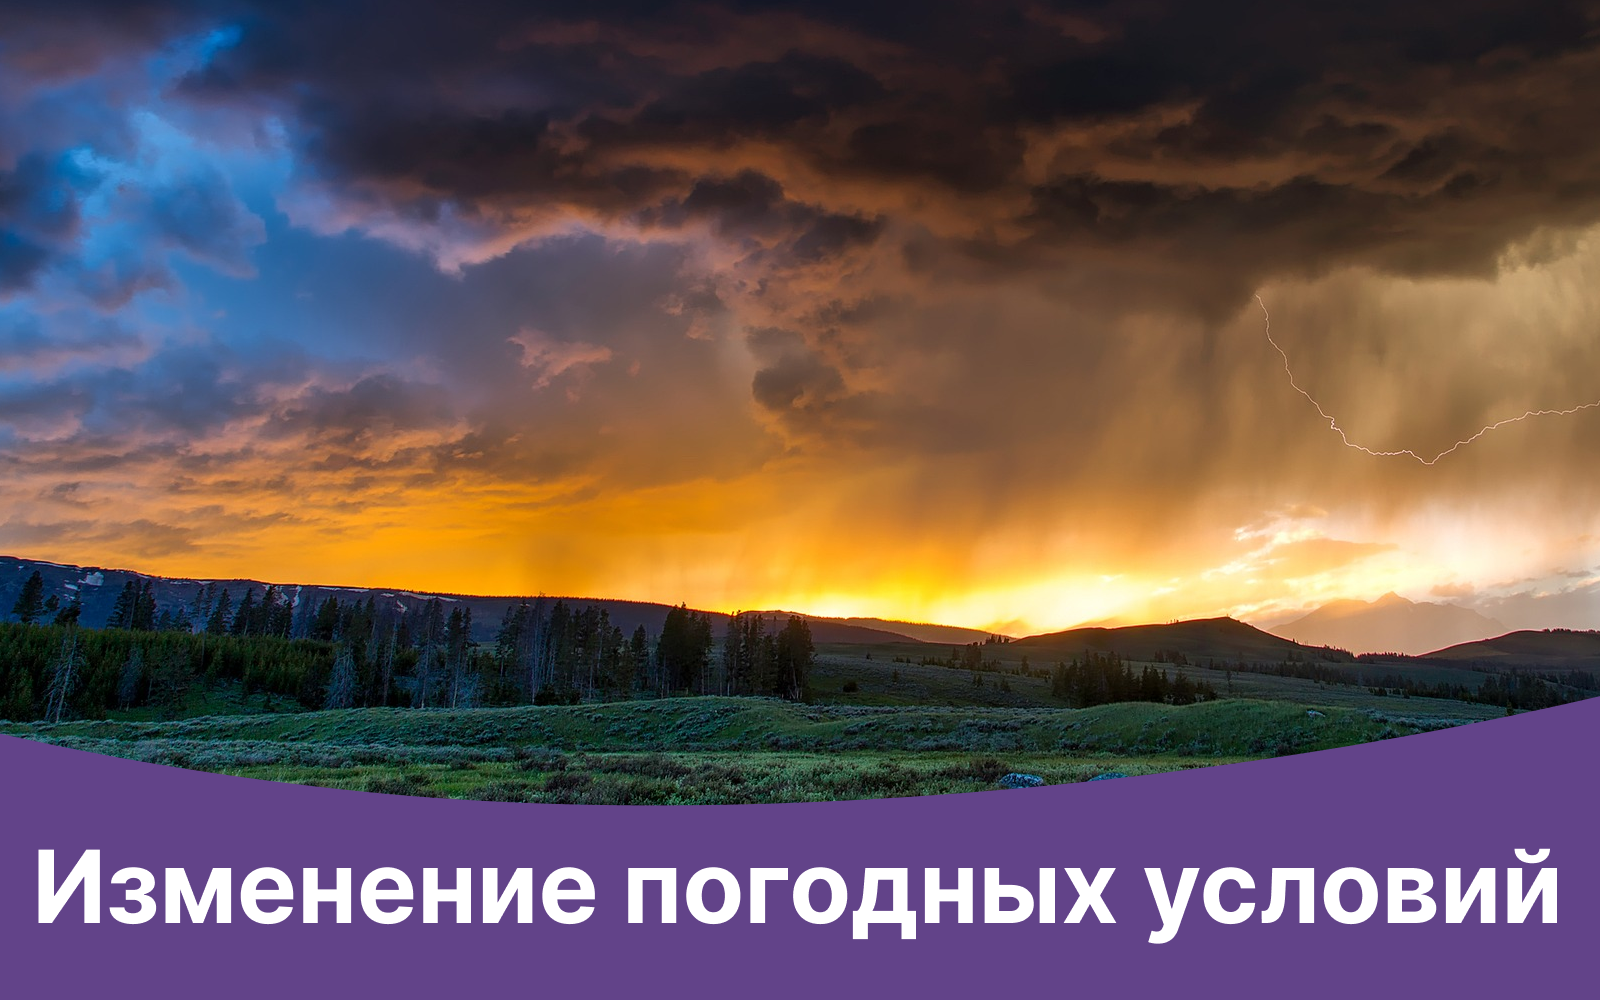 По данным гидрометеобюро г. Новороссийск: 28 ноября в Новороссийске ожидается  усиление северо-восточного ветра 15-20 м/с, с усилением ночью и утром 29 ноября, порывы 24 м/с. Высота волн 13-20 дециметров.